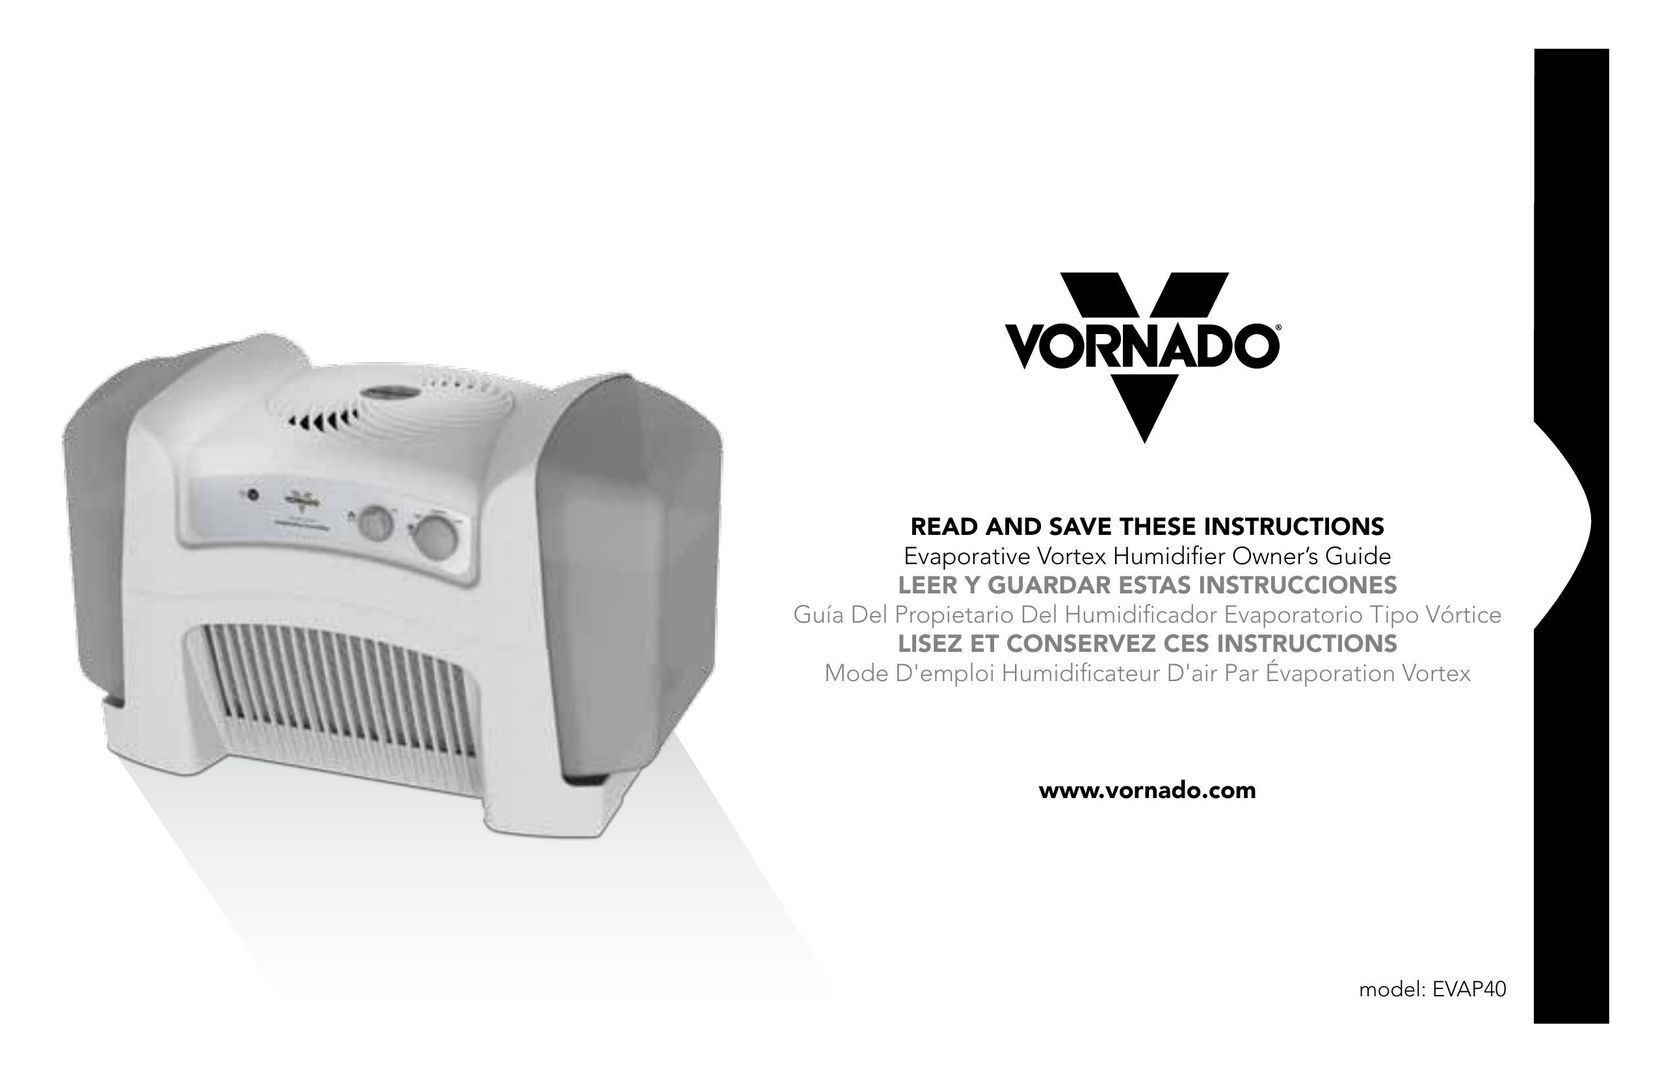 Vornado EVAP40 Dehumidifier User Manual